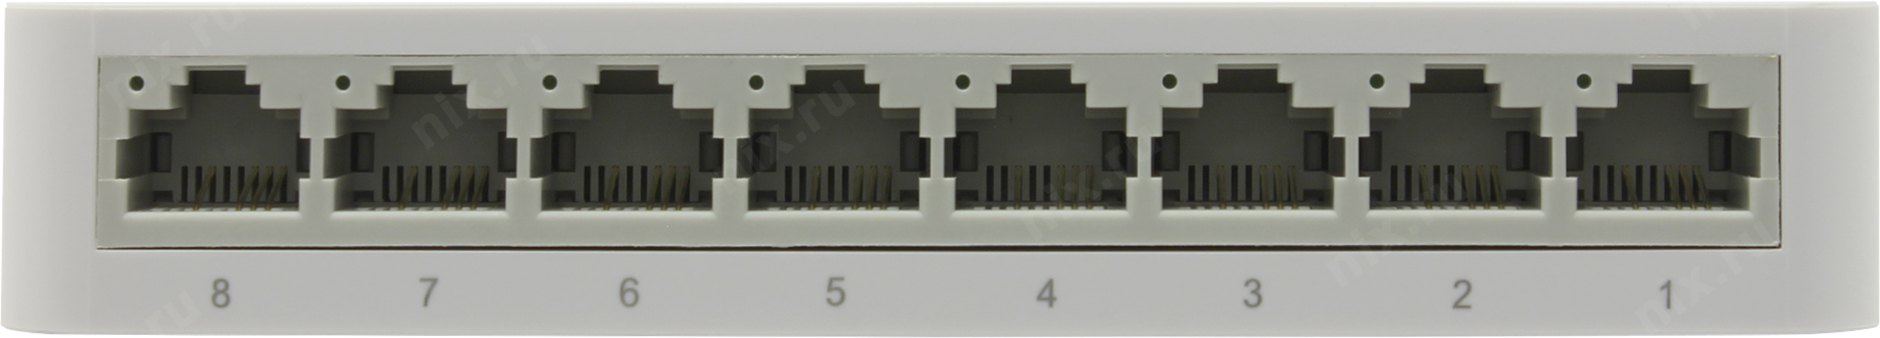 Свитч, хаб (hub) 100Mbps, 8-port TP-Link TL-SF1008D